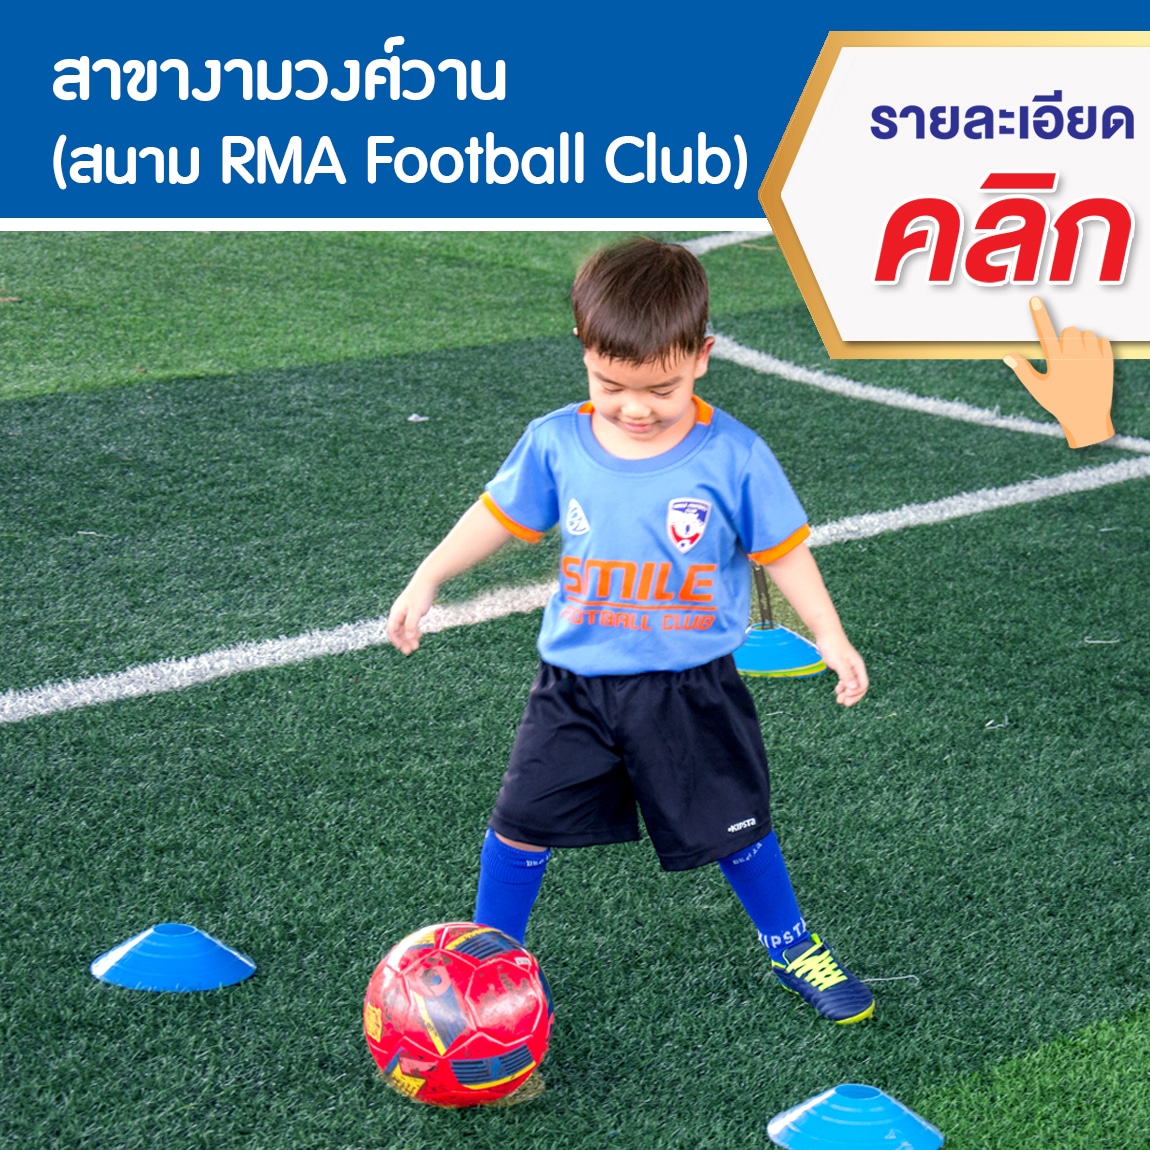 สอนฟุตบอลเด็ก by Smile Football Club_201908001